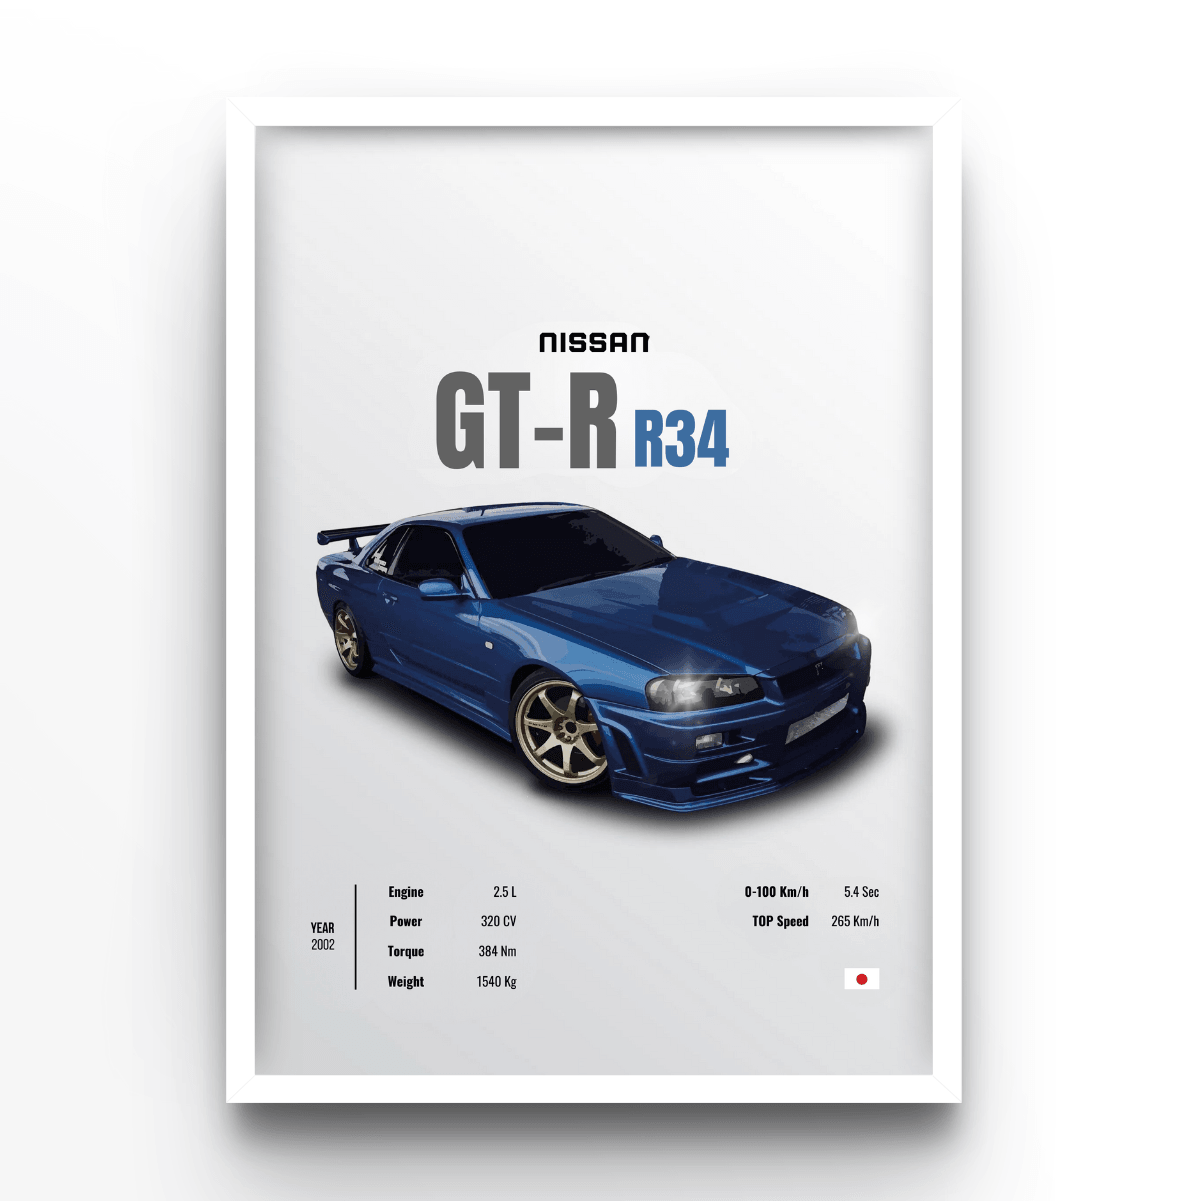 Nissan GT-R R34 - A4, A3, A2 Posters Base - Poster Print Shop / Art Prints / PostersBase